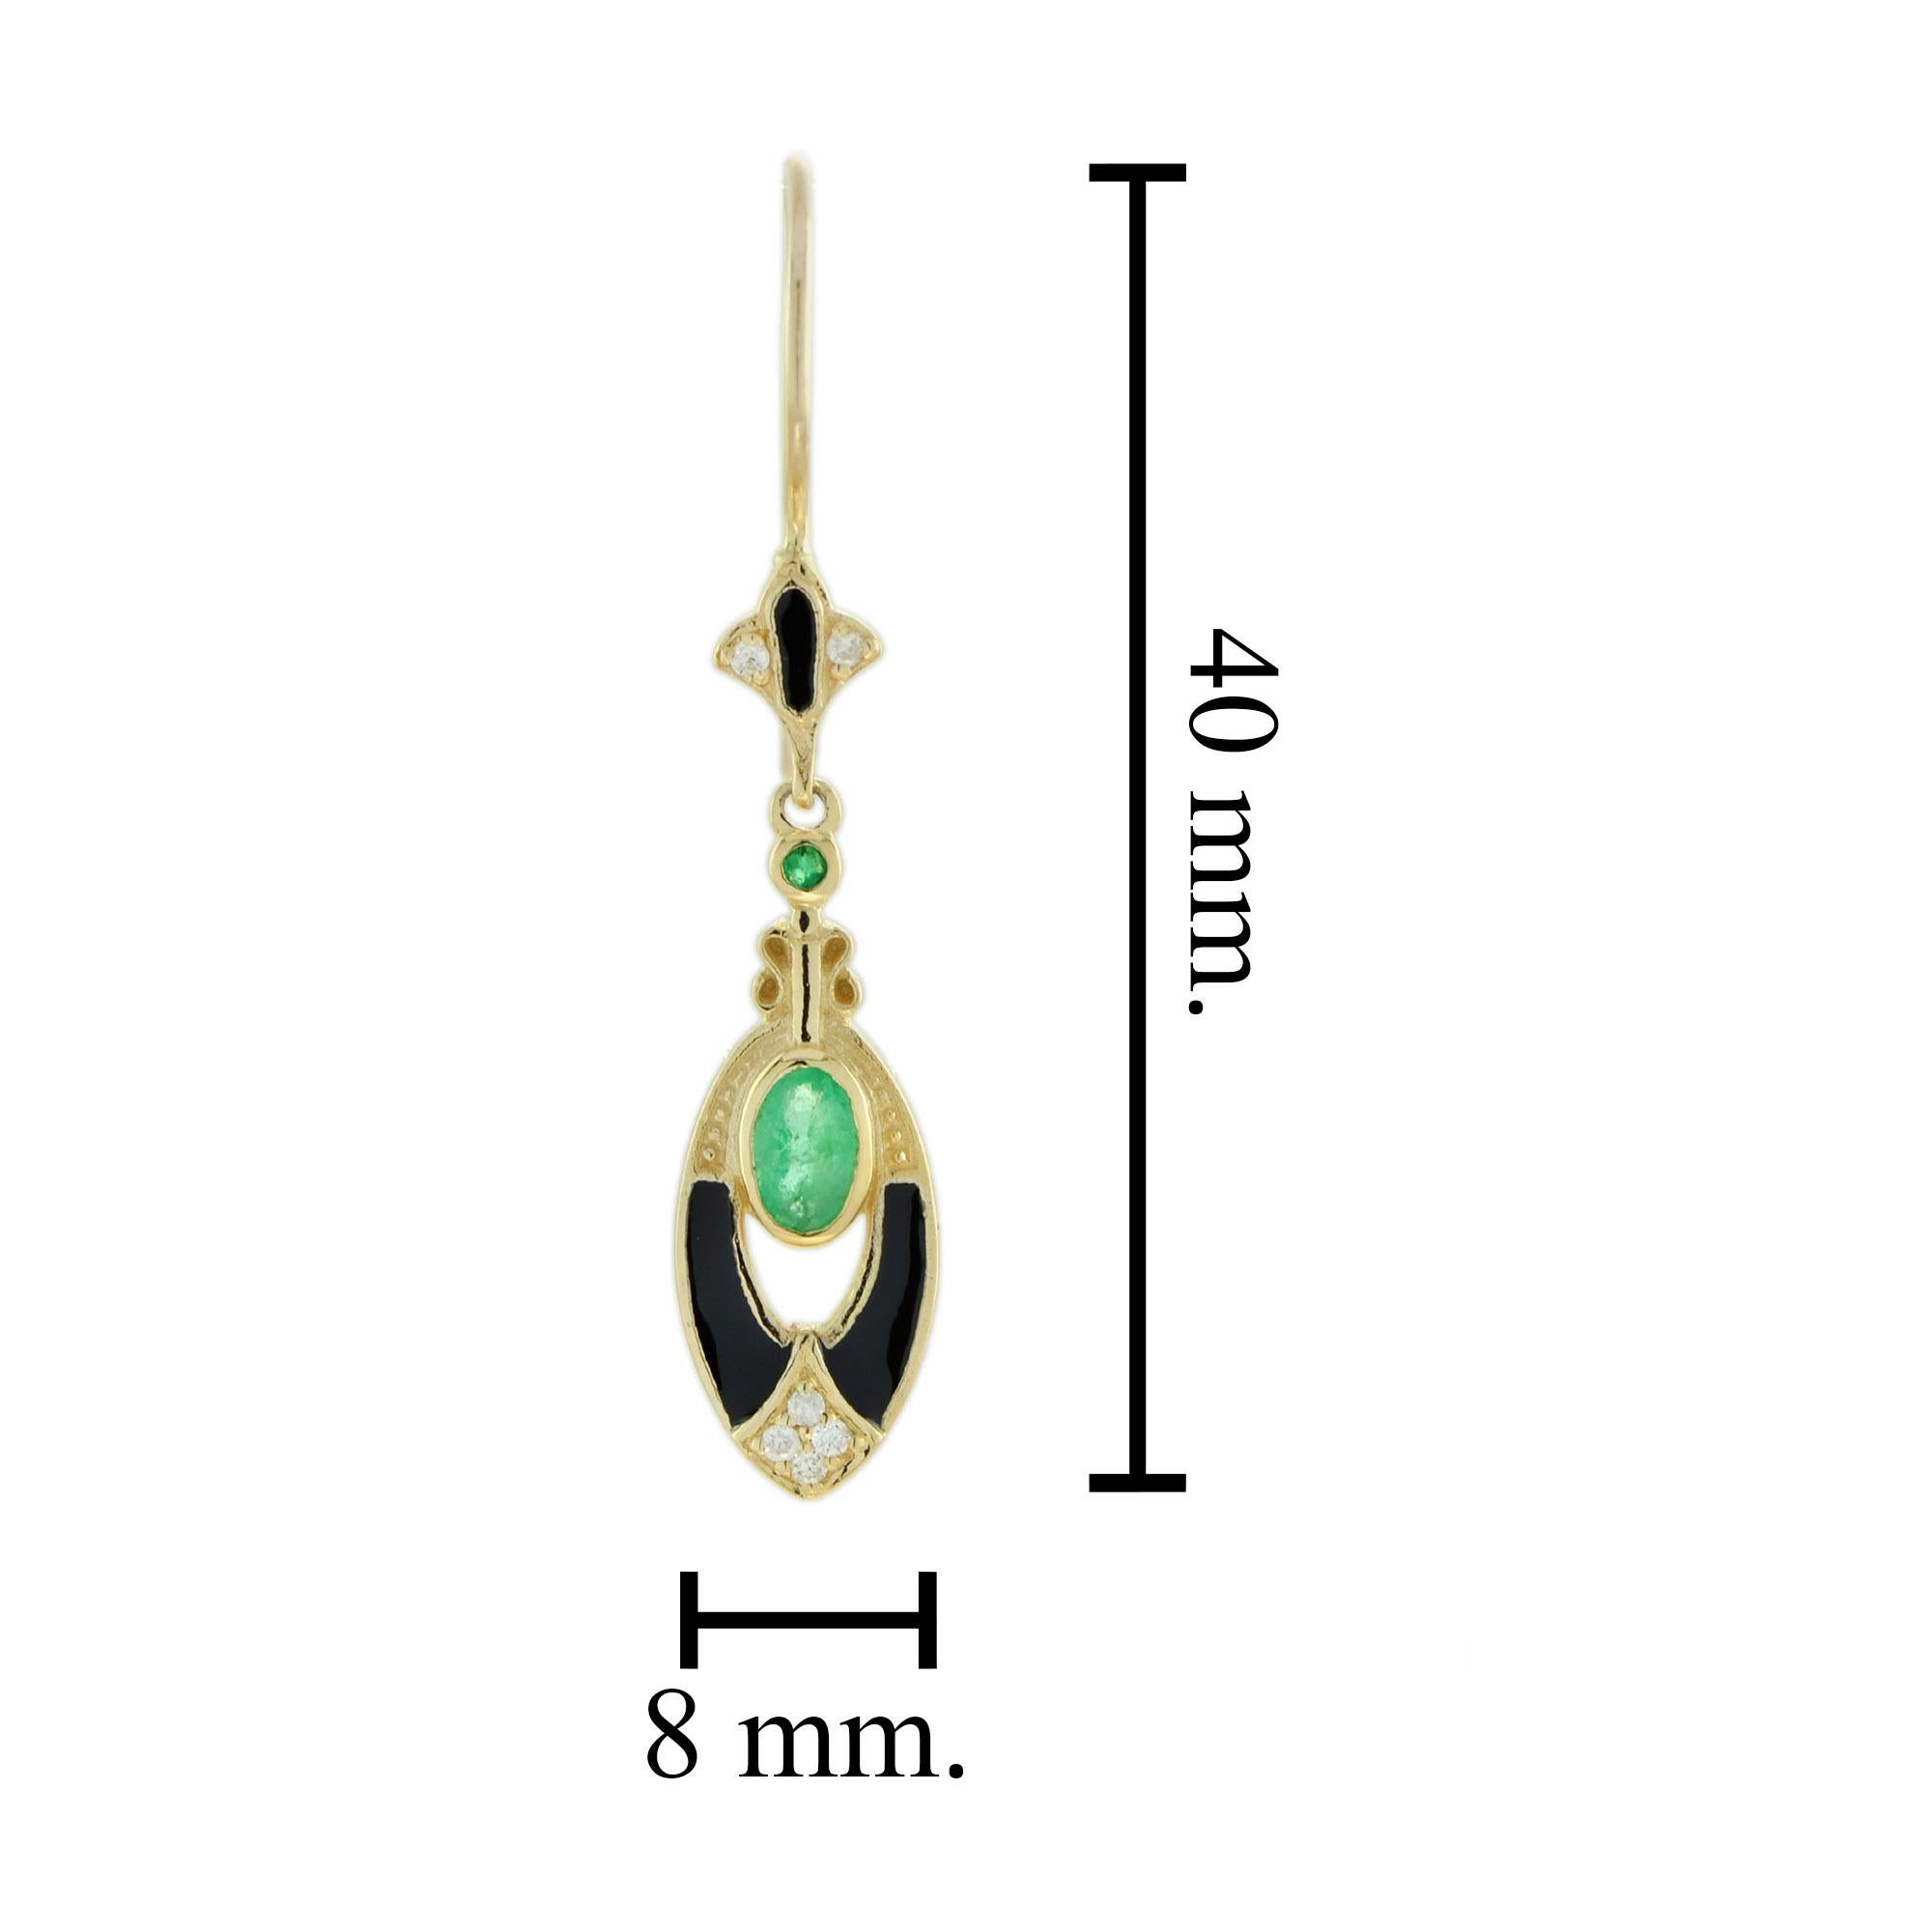 Oval Cut Antique Style Emerald Diamond Black Enamel Dangle Earrings in 9k Yellow Gold For Sale